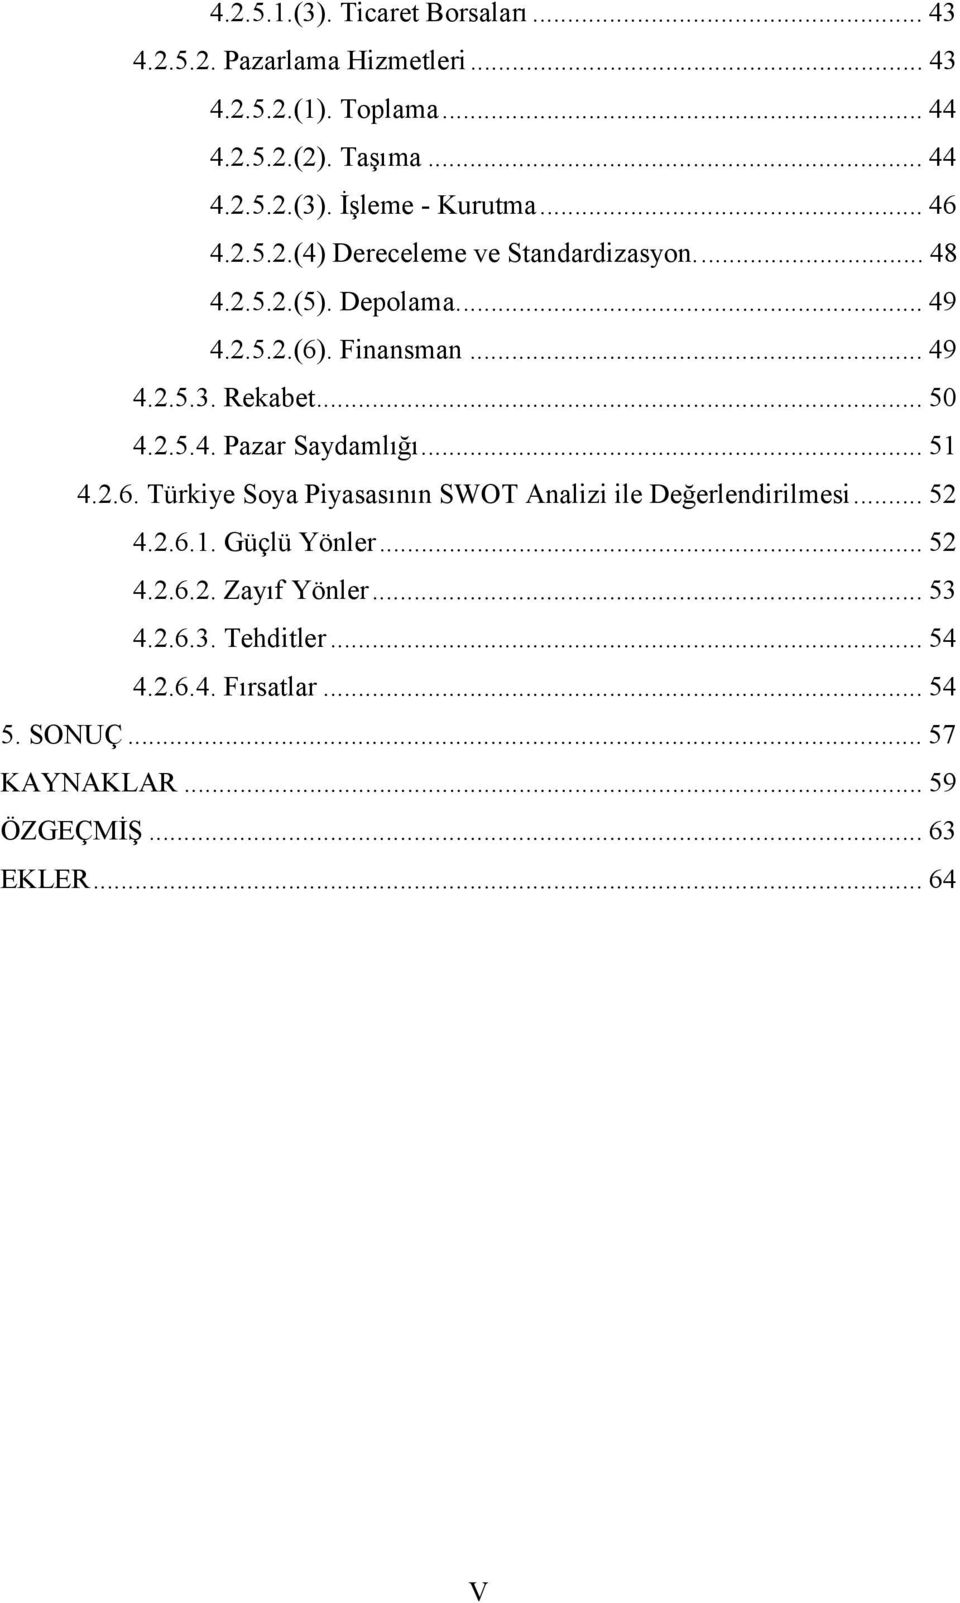 .. 51 4.2.6. Türkiye Soya Piyasasının SWOT Analizi ile Değerlendirilmesi... 52 4.2.6.1. Güçlü Yönler... 52 4.2.6.2. Zayıf Yönler... 53 